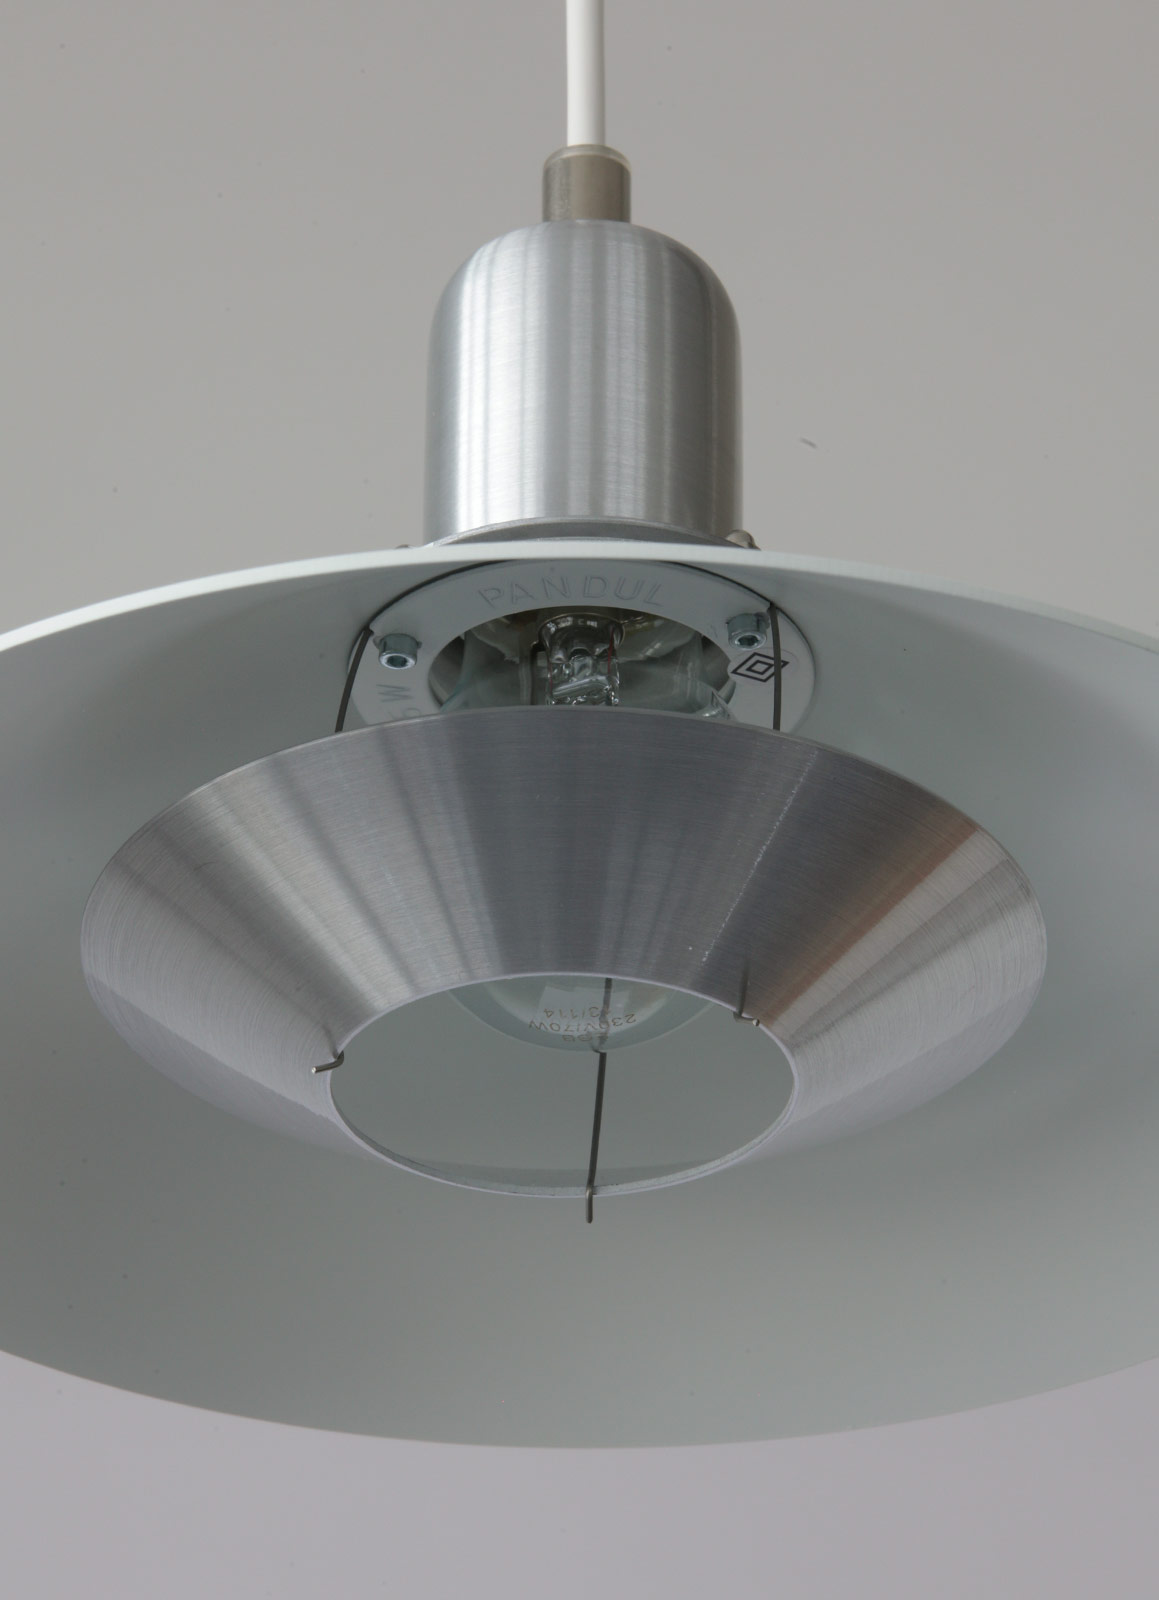 TIP TOP Zeitlose Design-Pendelleuchte aus Dänemark, Ø 20 bis 48 cm: Der innere Blendschutz-Reflektor aus gebürstetem Aluminium kann abgenommen werden